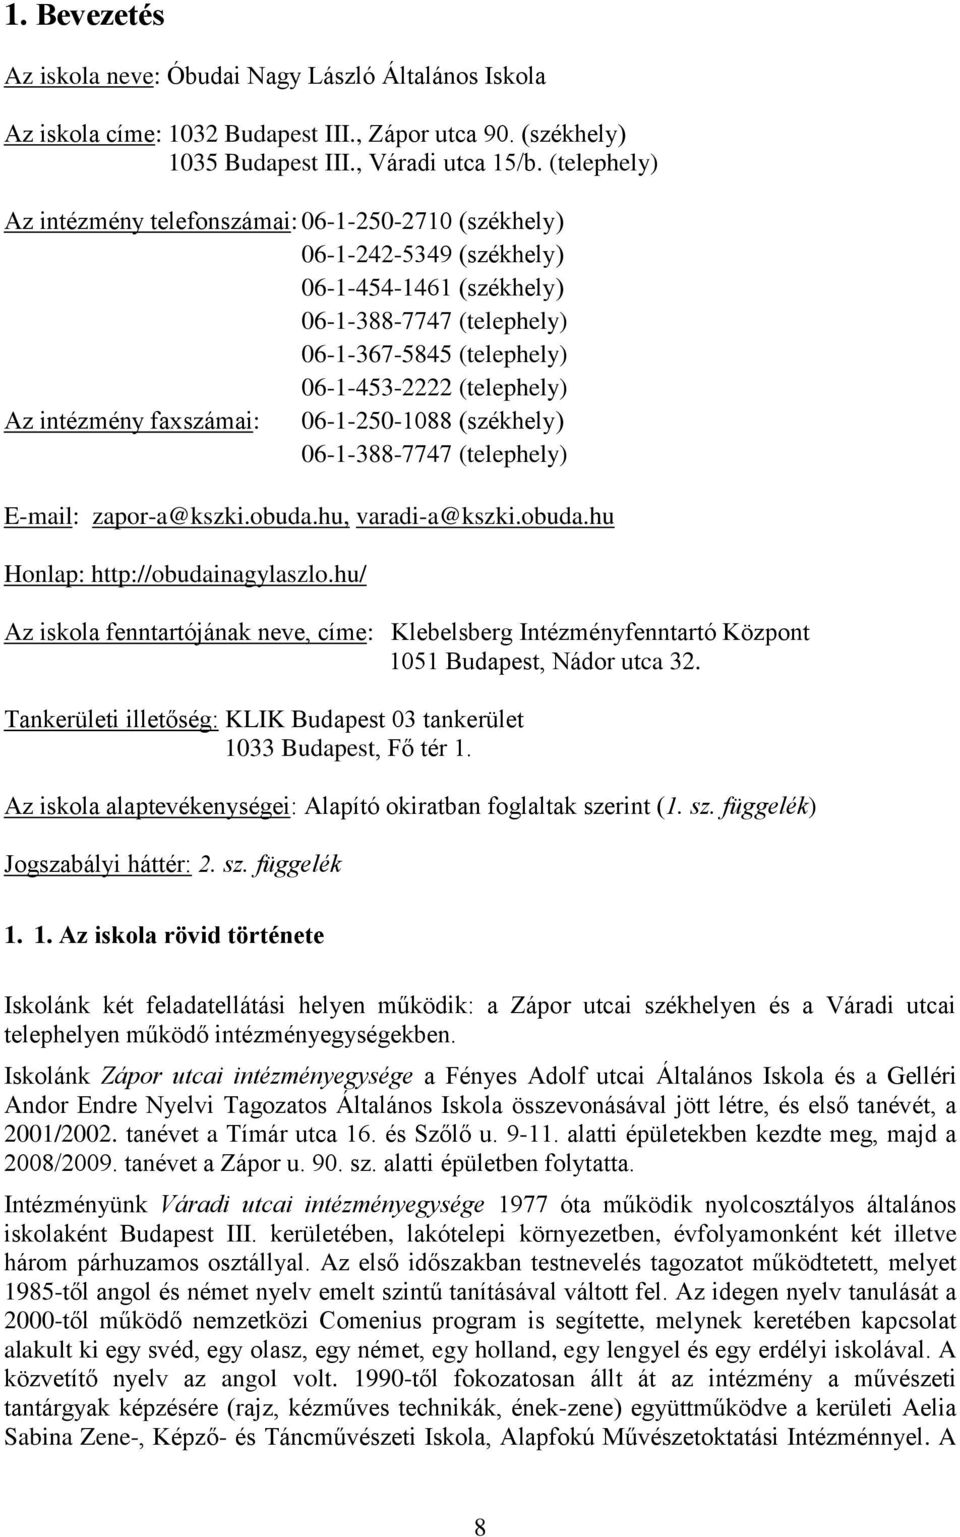 intézmény faxszámai: 06-1-250-1088 (székhely) 06-1-388-7747 (telephely) E-mail: zapor-a@kszki.obuda.hu, varadi-a@kszki.obuda.hu Honlap: http://obudainagylaszlo.